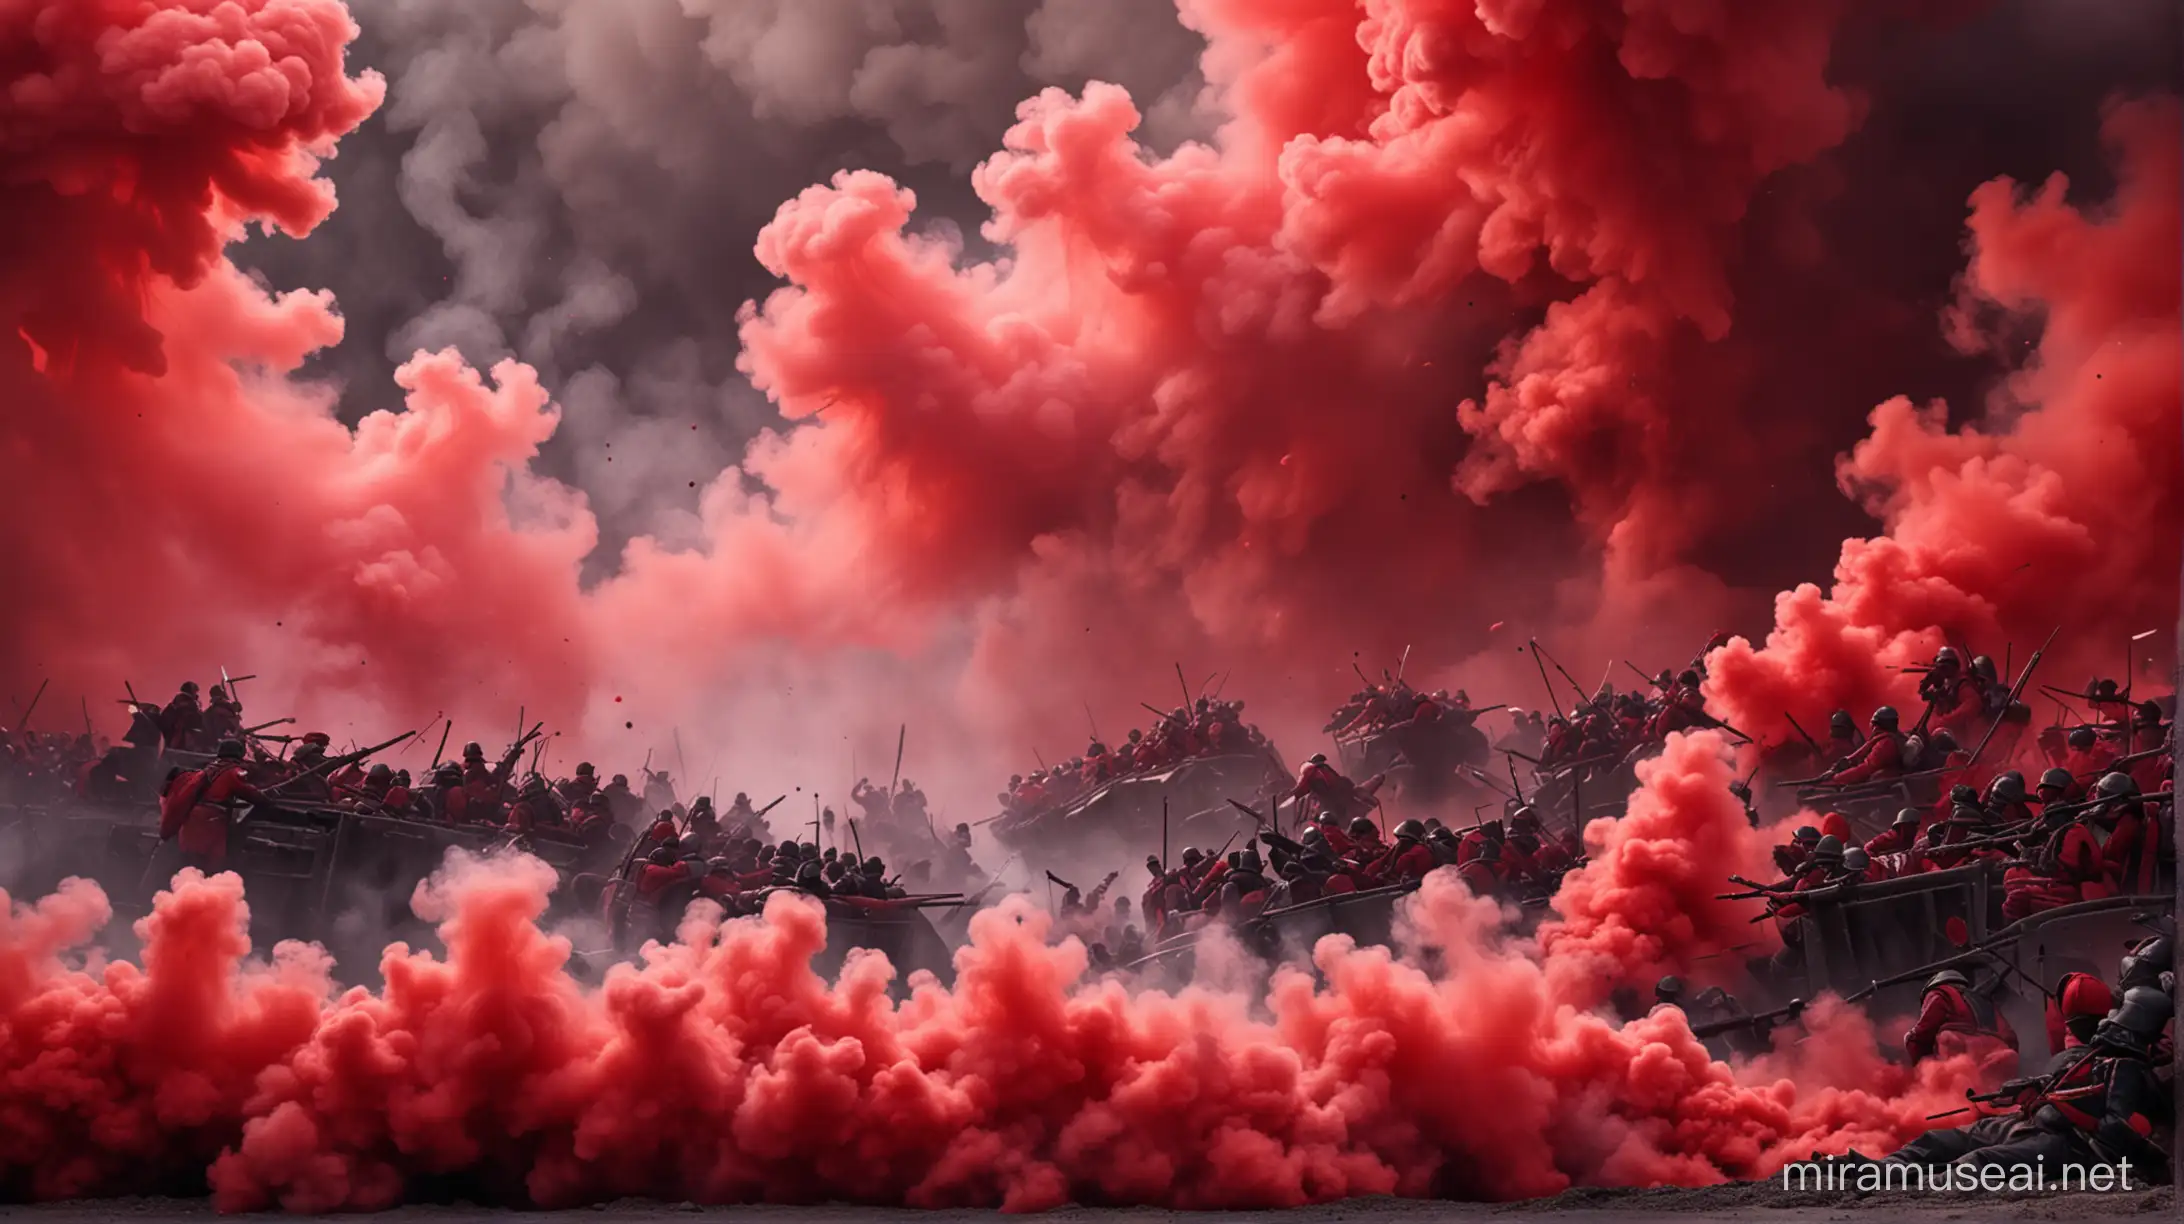 un fondo de una batlla en guerra con los colores rojo y negro bien atractivo pero sin personas solom un fondo con humos 
